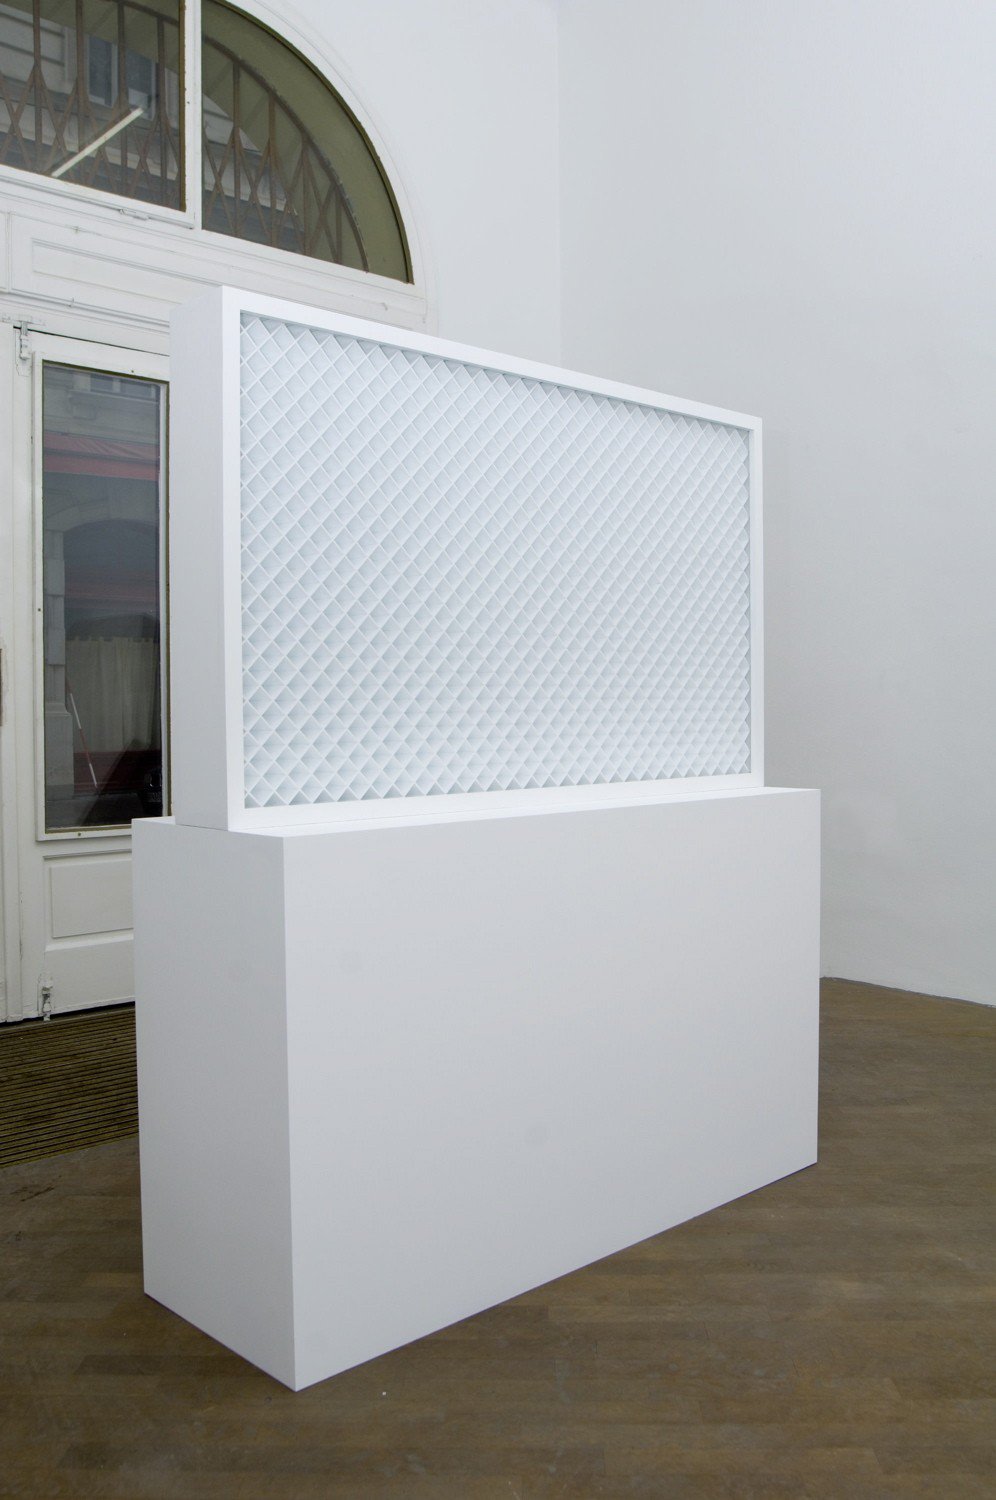 Marius EnghStraight, 2010Plexiglas, wood, lacquer136 x 162 x 45 cm